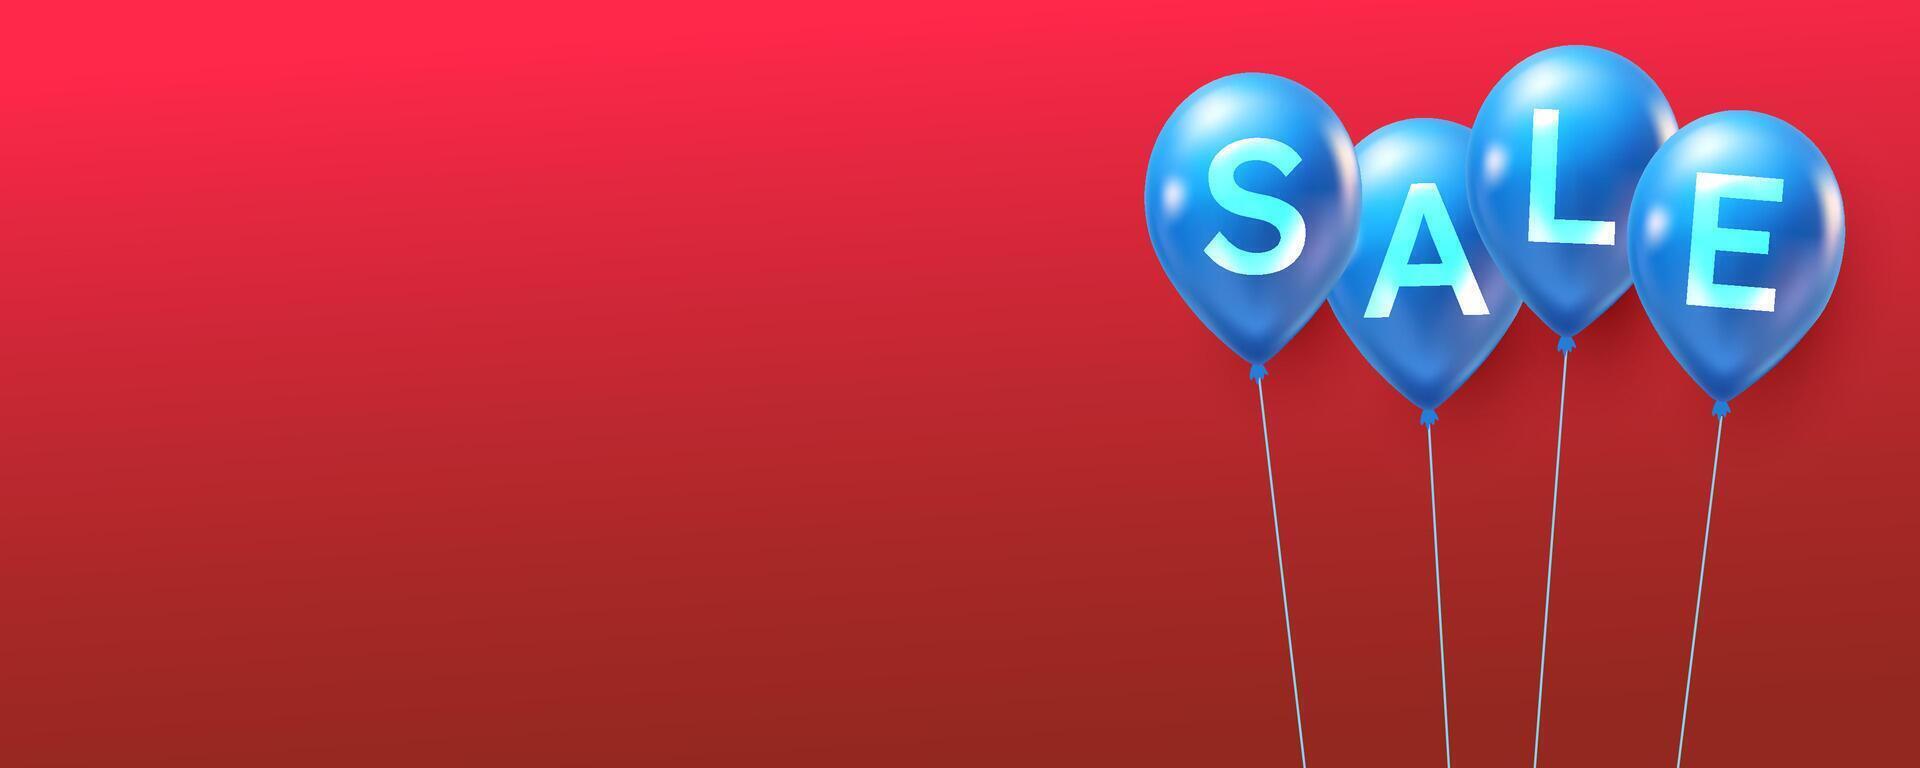 försäljning rabatt baner tecken på blå baloon vektor